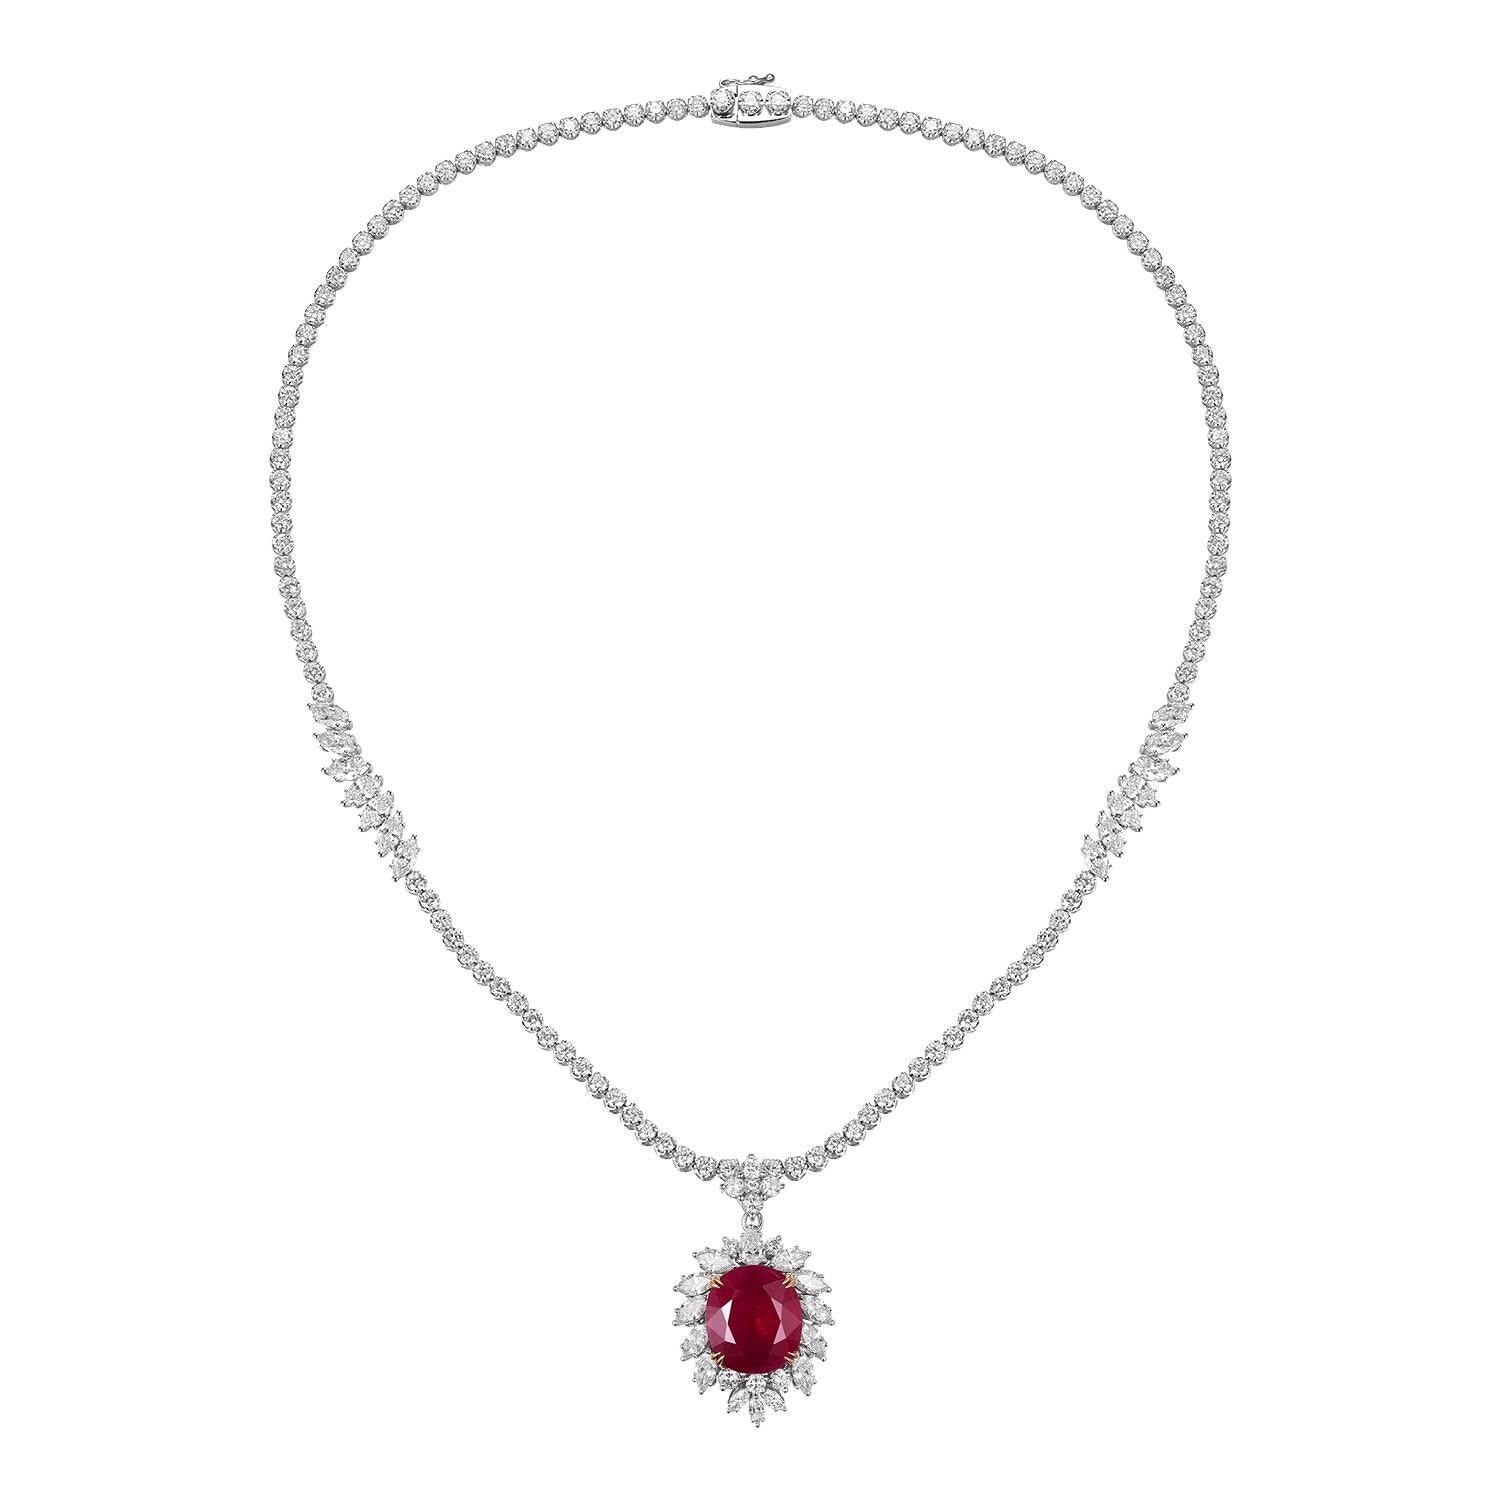 Découvrez le summum du luxe et de l'artisanat avec ce collier rubis-diamant, une pièce qui définit l'élégance et la polyvalence. Réalisé en or blanc 18 carats, ce collier témoigne d'un savoir-faire artistique impeccable et d'un amour pour les